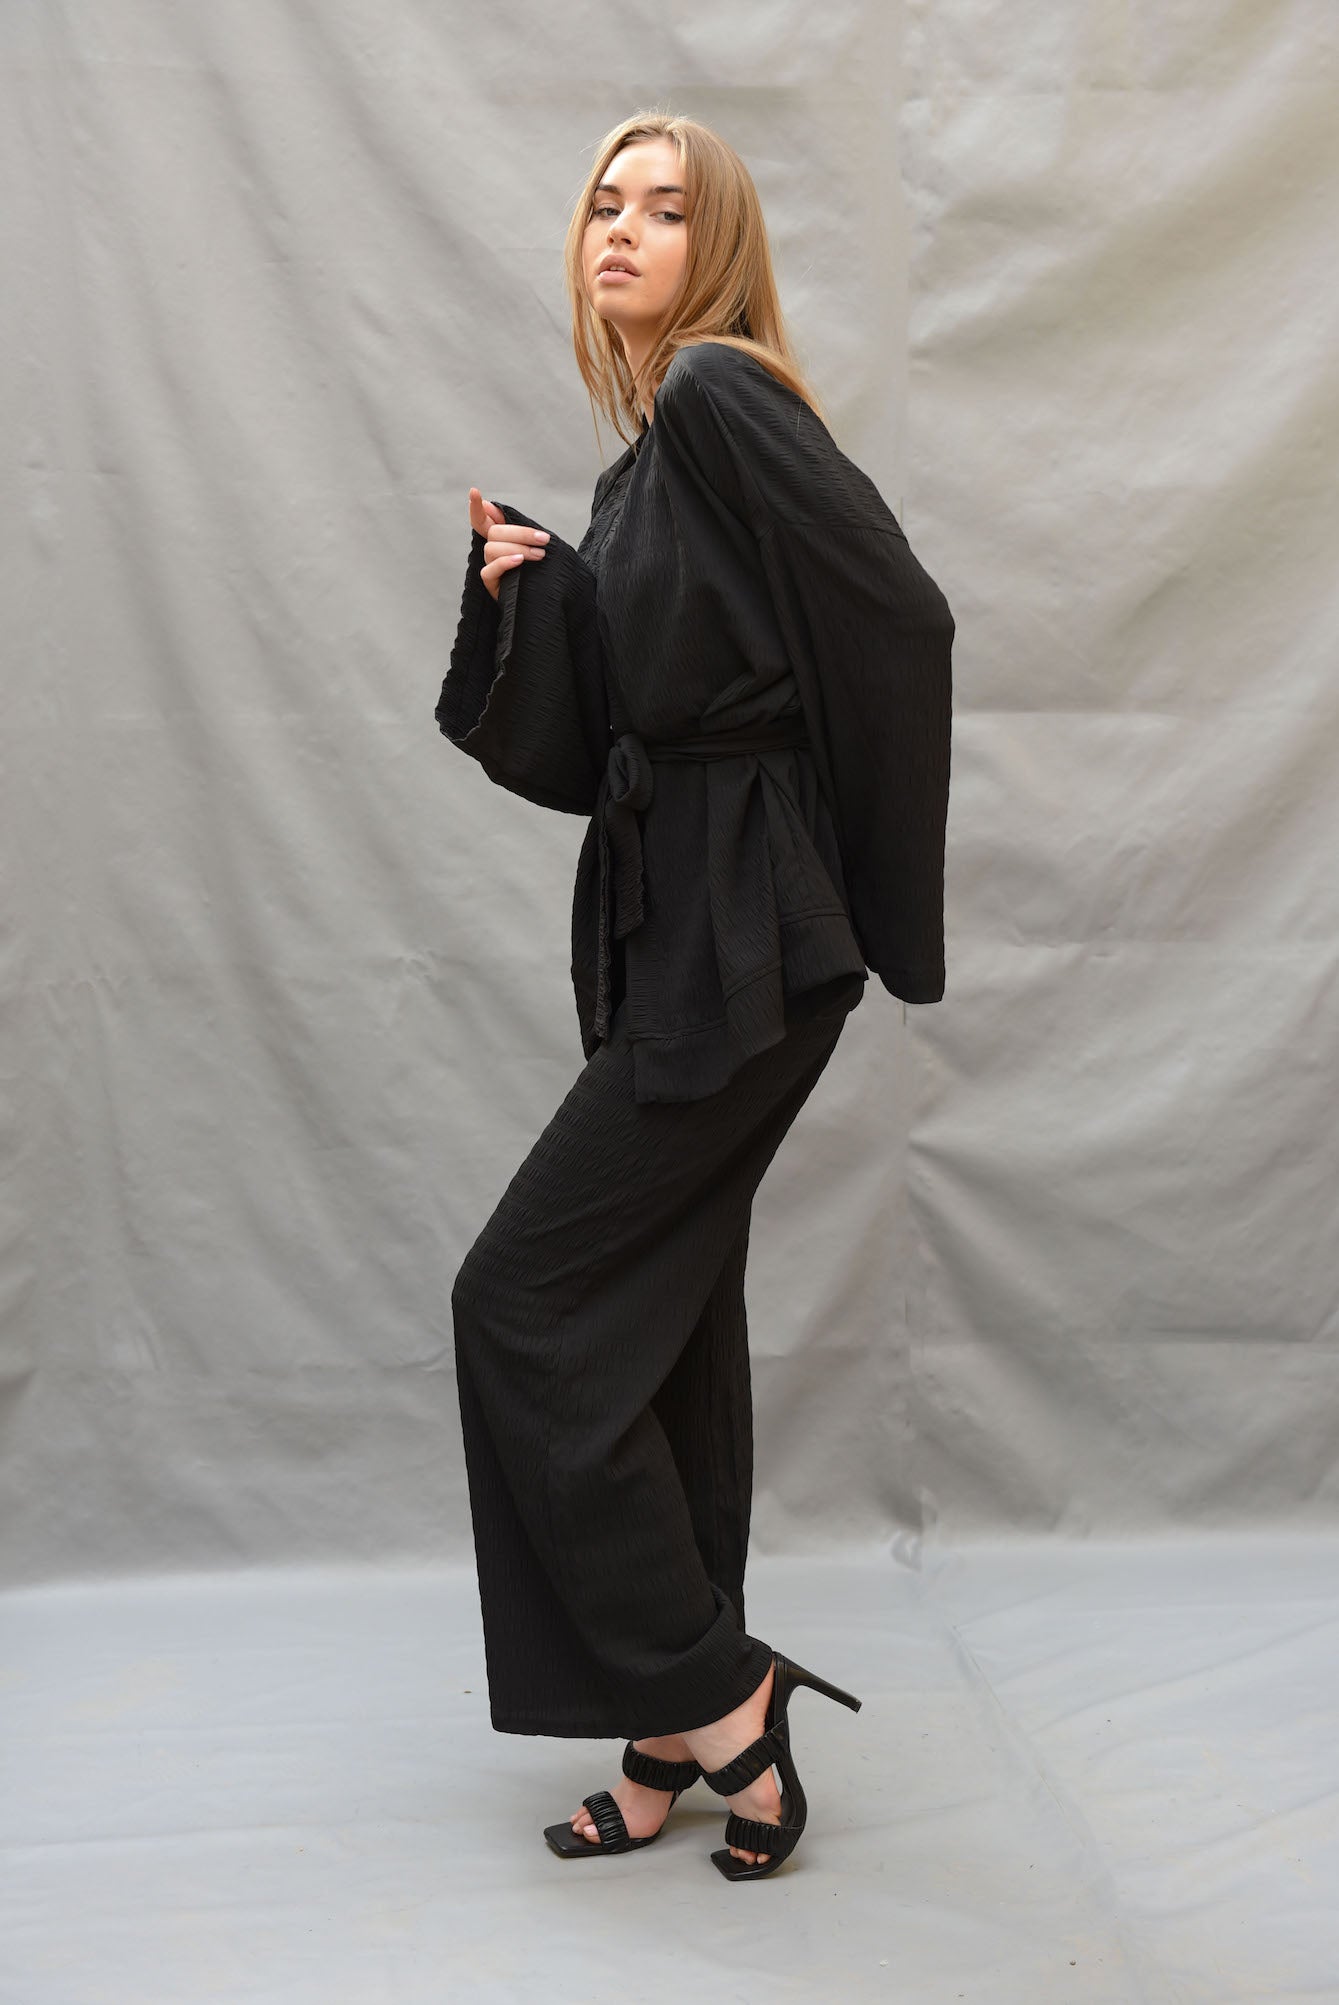 The black kimono set (kimono + pants)